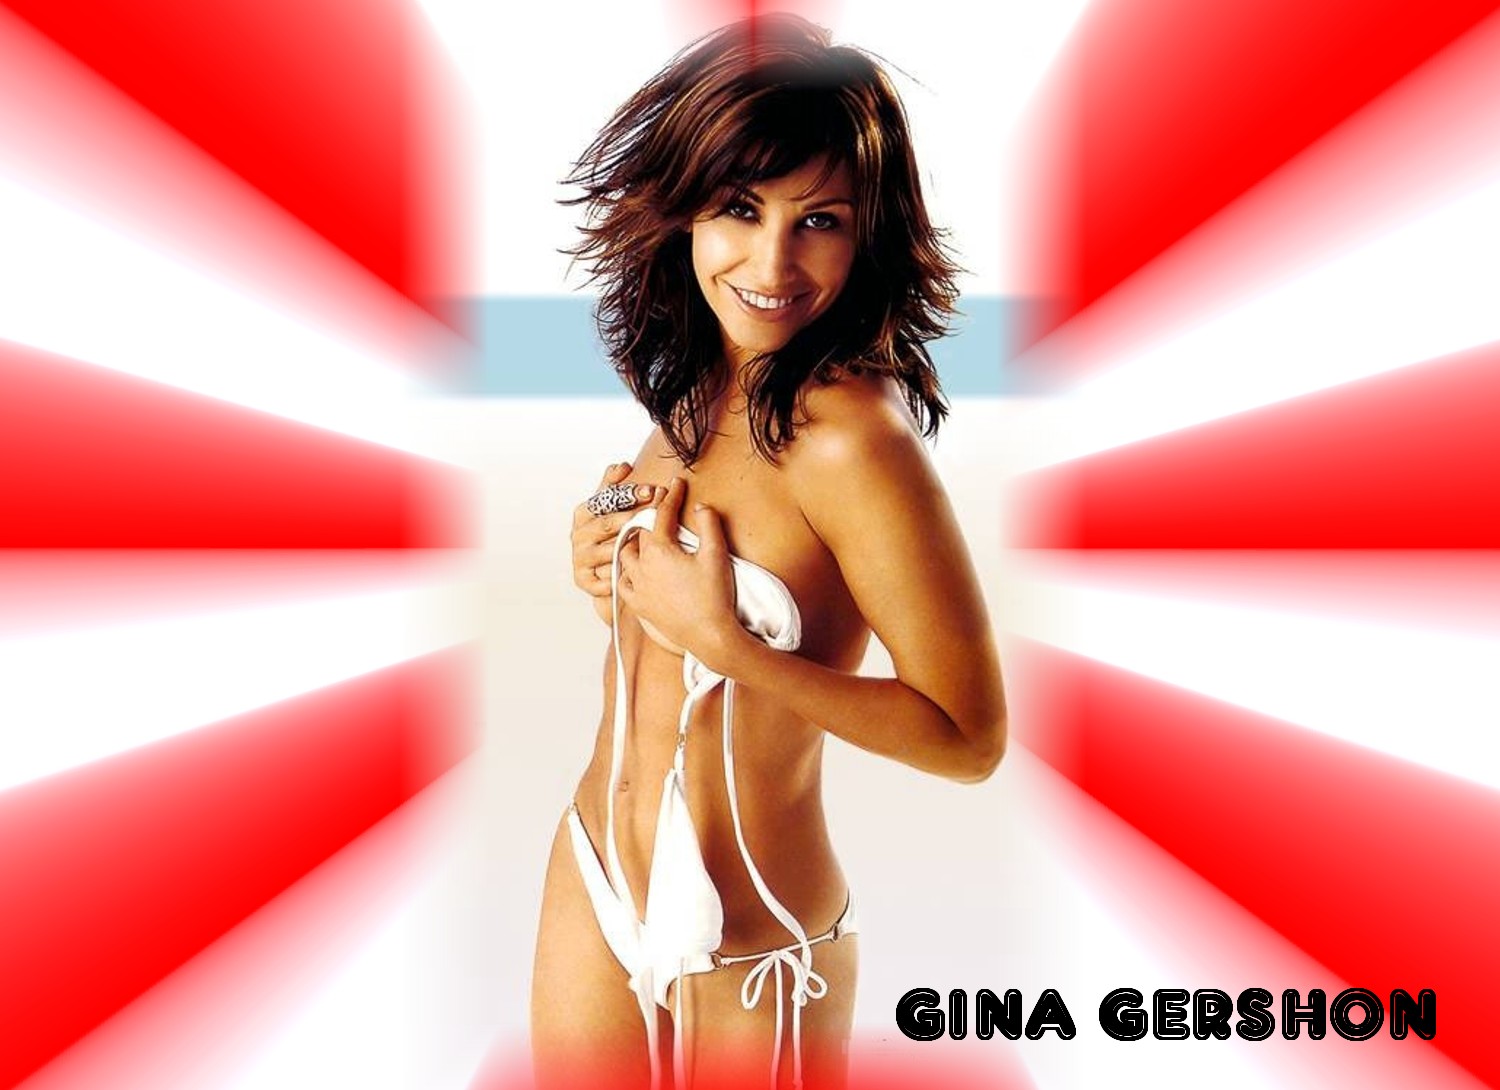 Gina gershon 18